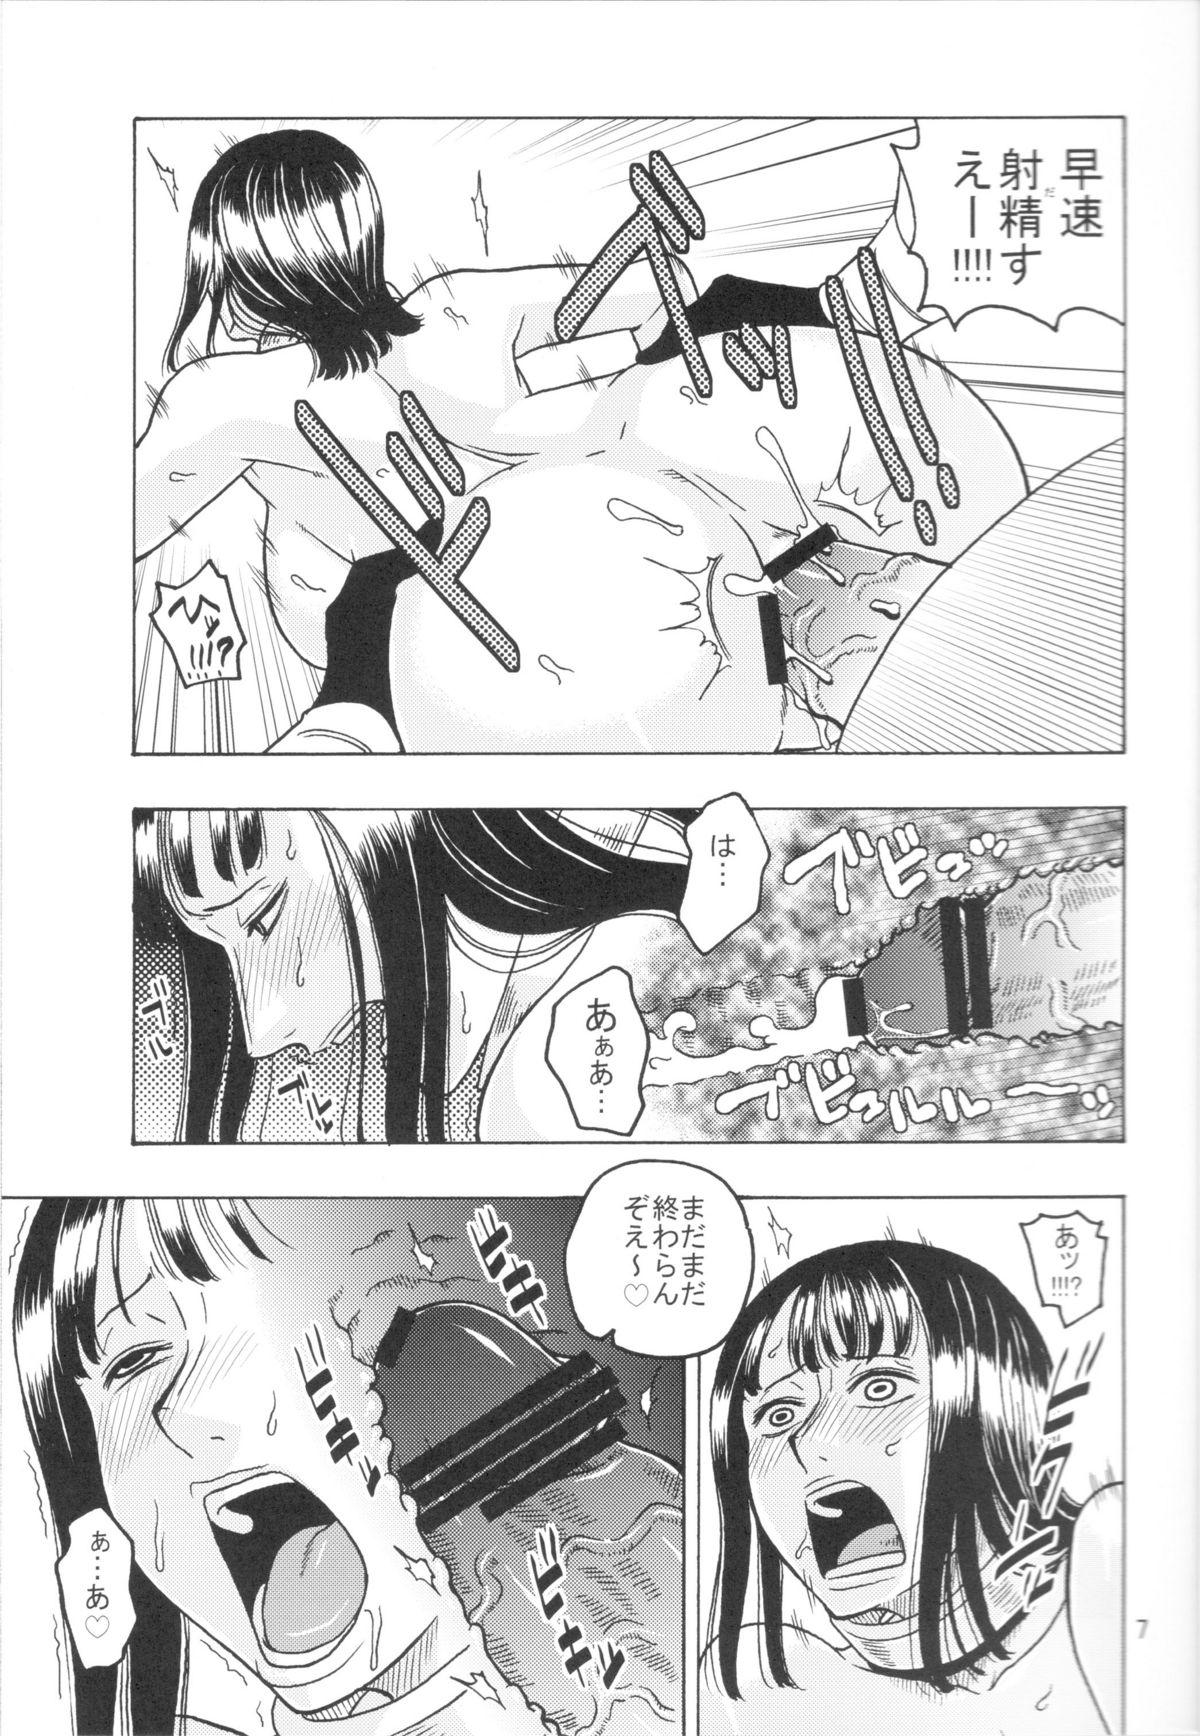 Romantic Nami no Koukai Nisshi EX NamiRobi 3 - One piece Japanese - Page 8